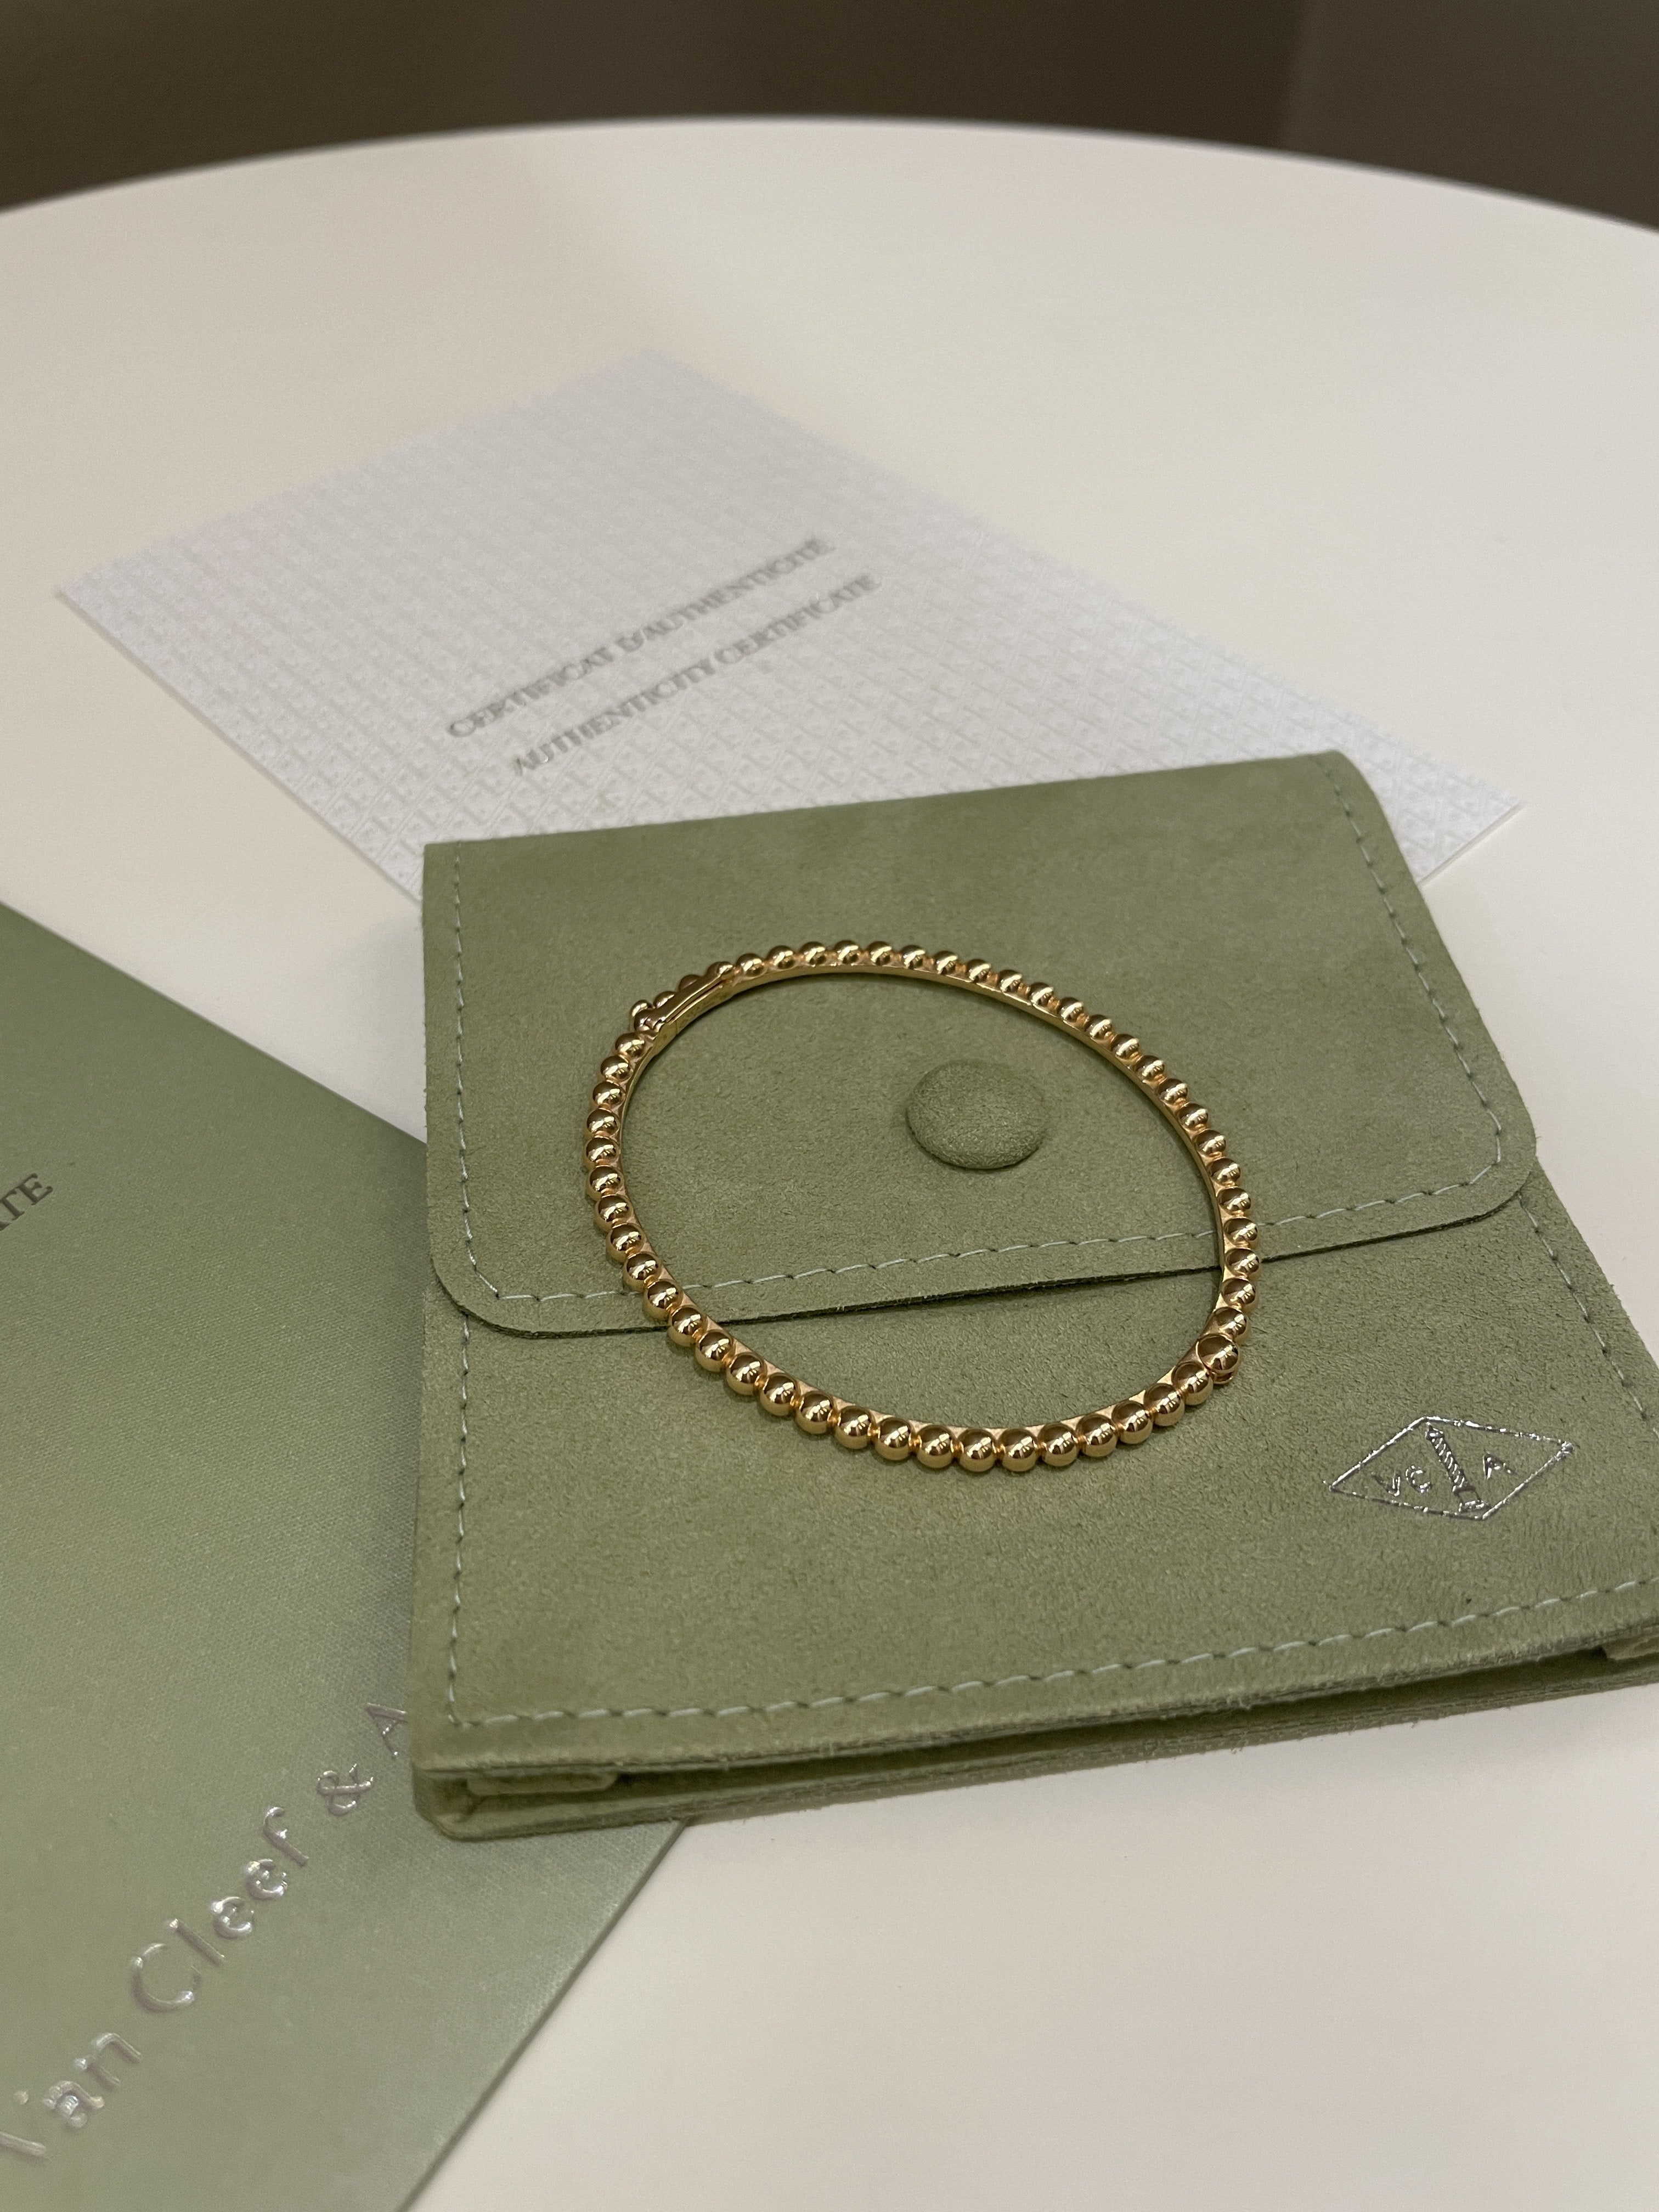 Van Cleef & Arpels Perlee Pearls of Gold Bracelet